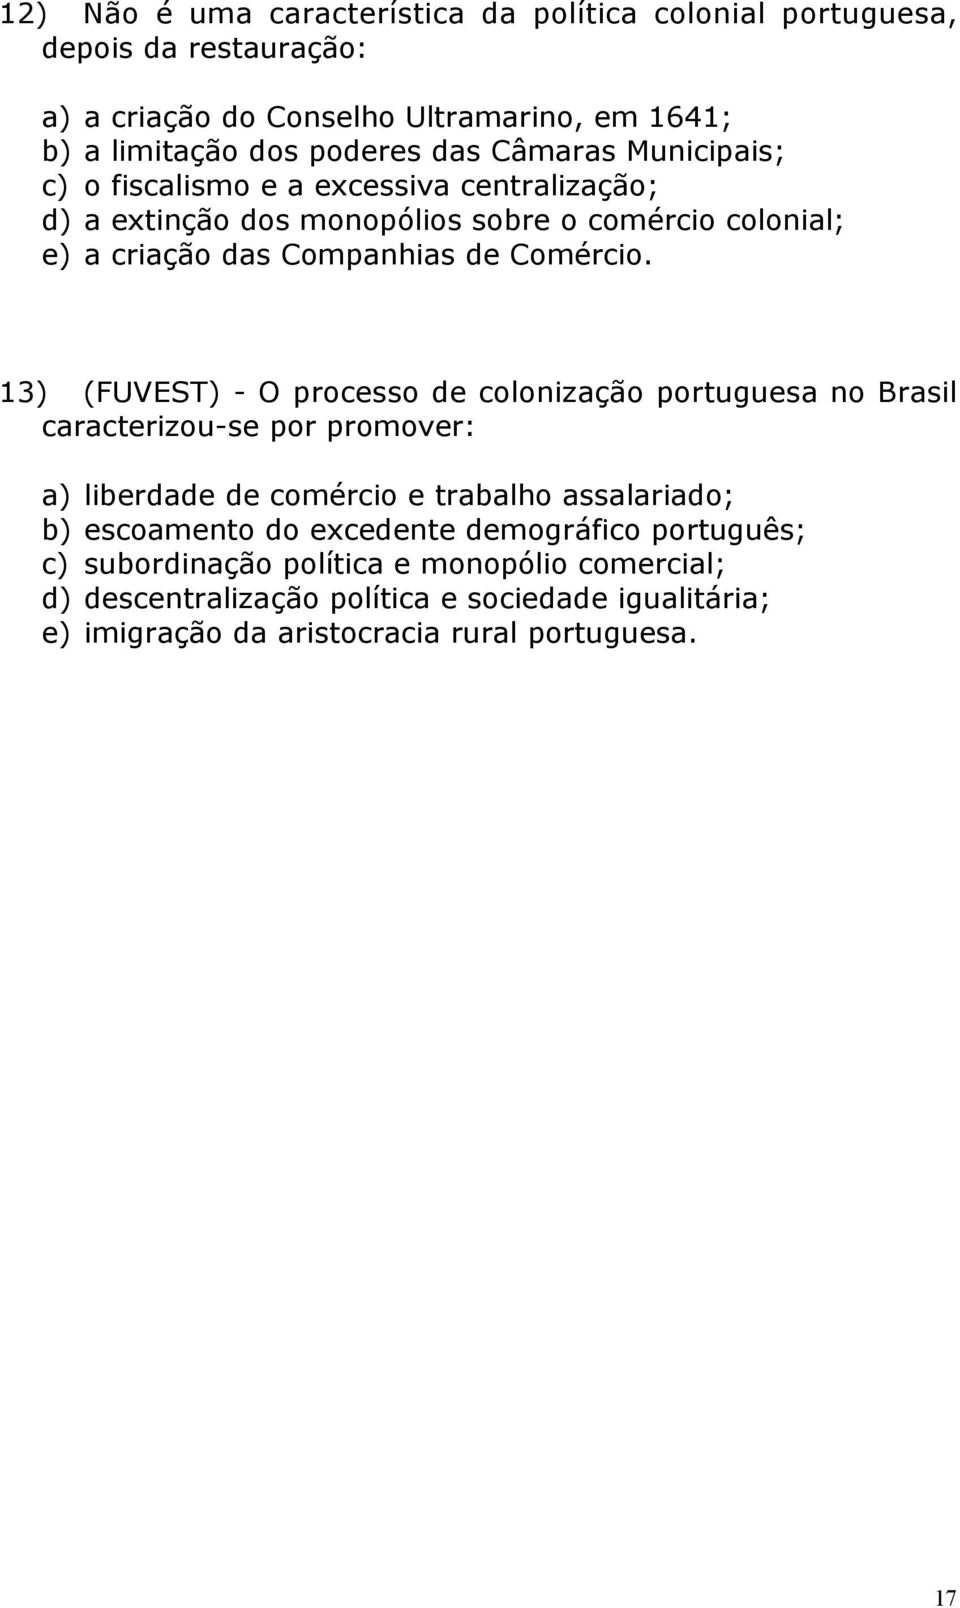 13) (FUVEST) - O processo de colonização portuguesa no Brasil caracterizou-se por promover: a) liberdade de comércio e trabalho assalariado; b) escoamento do